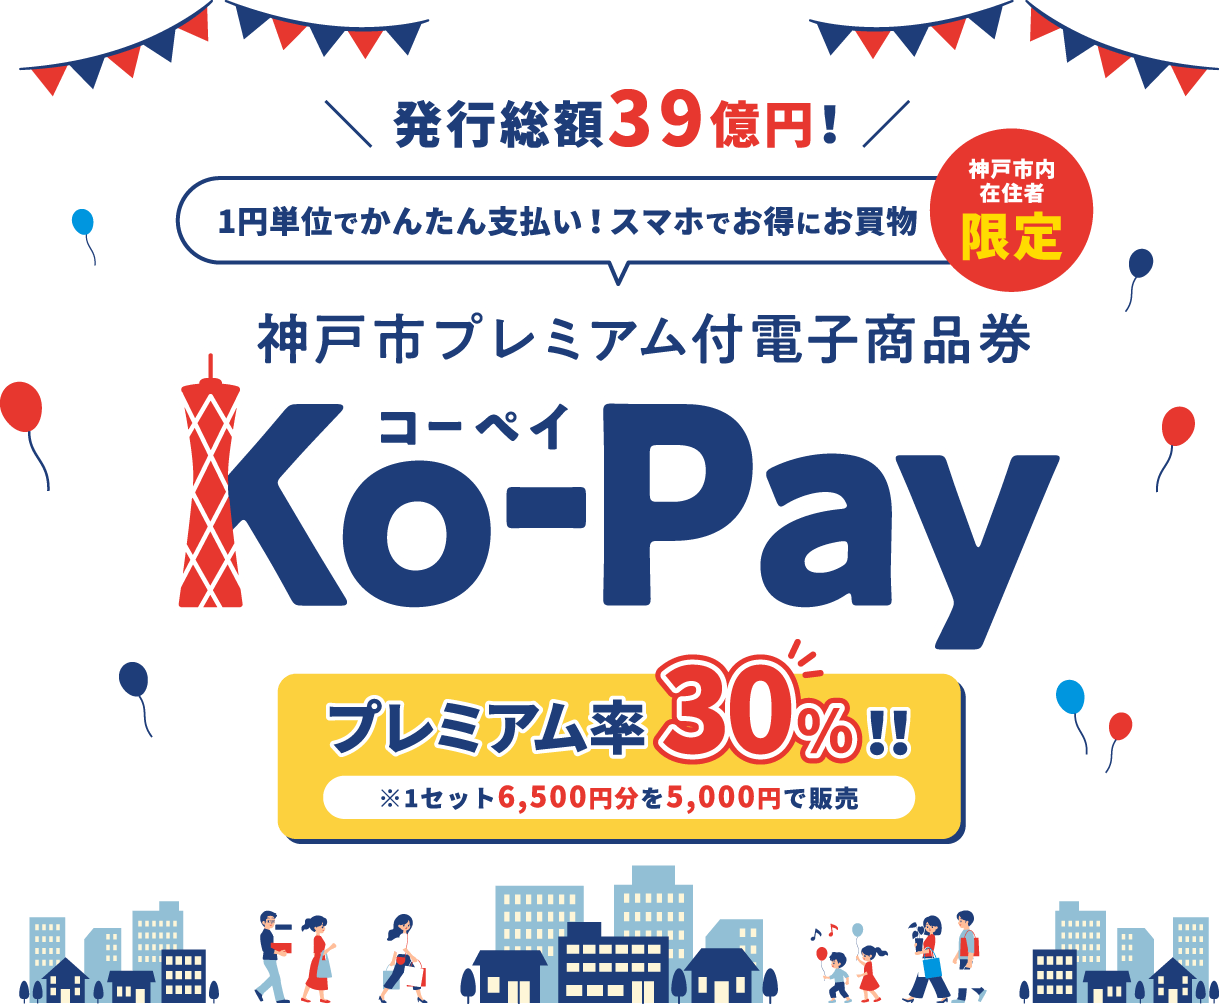 神戸市プレミアム付電子商品券Ko-pay利用が始まります！